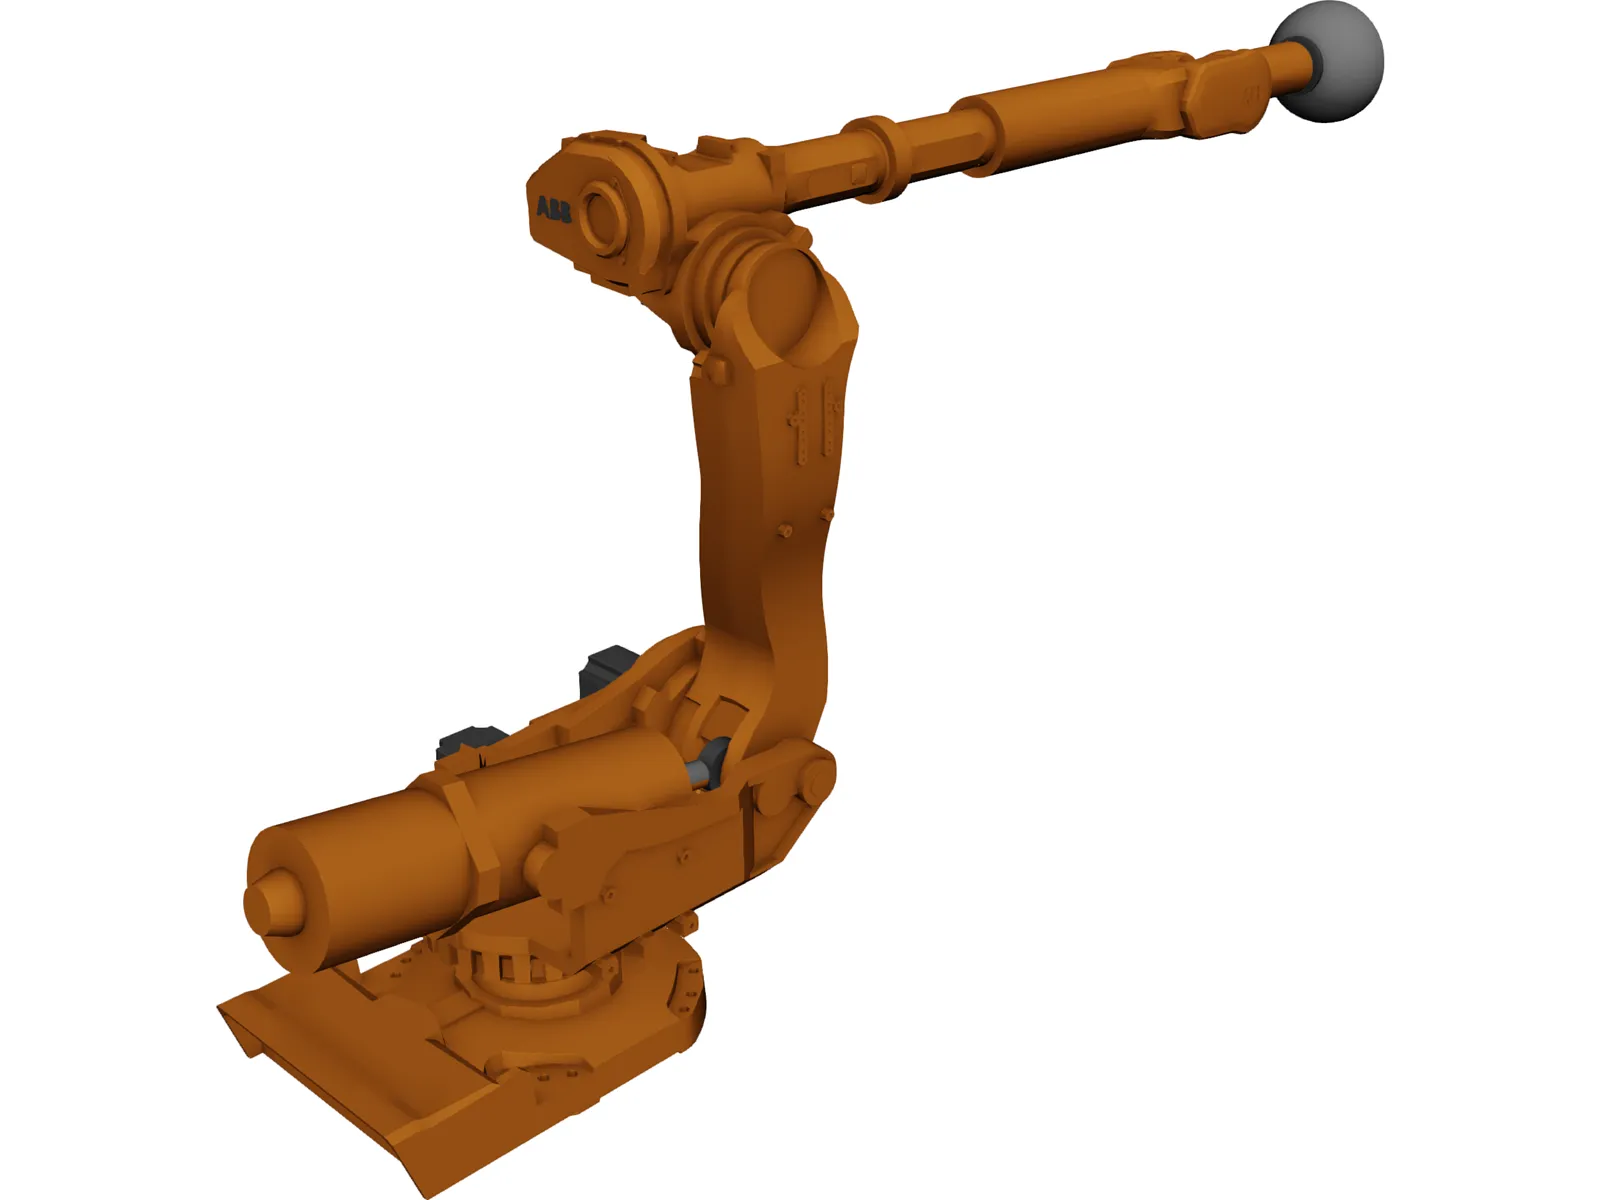 ABB 6650 Robot 3D Model